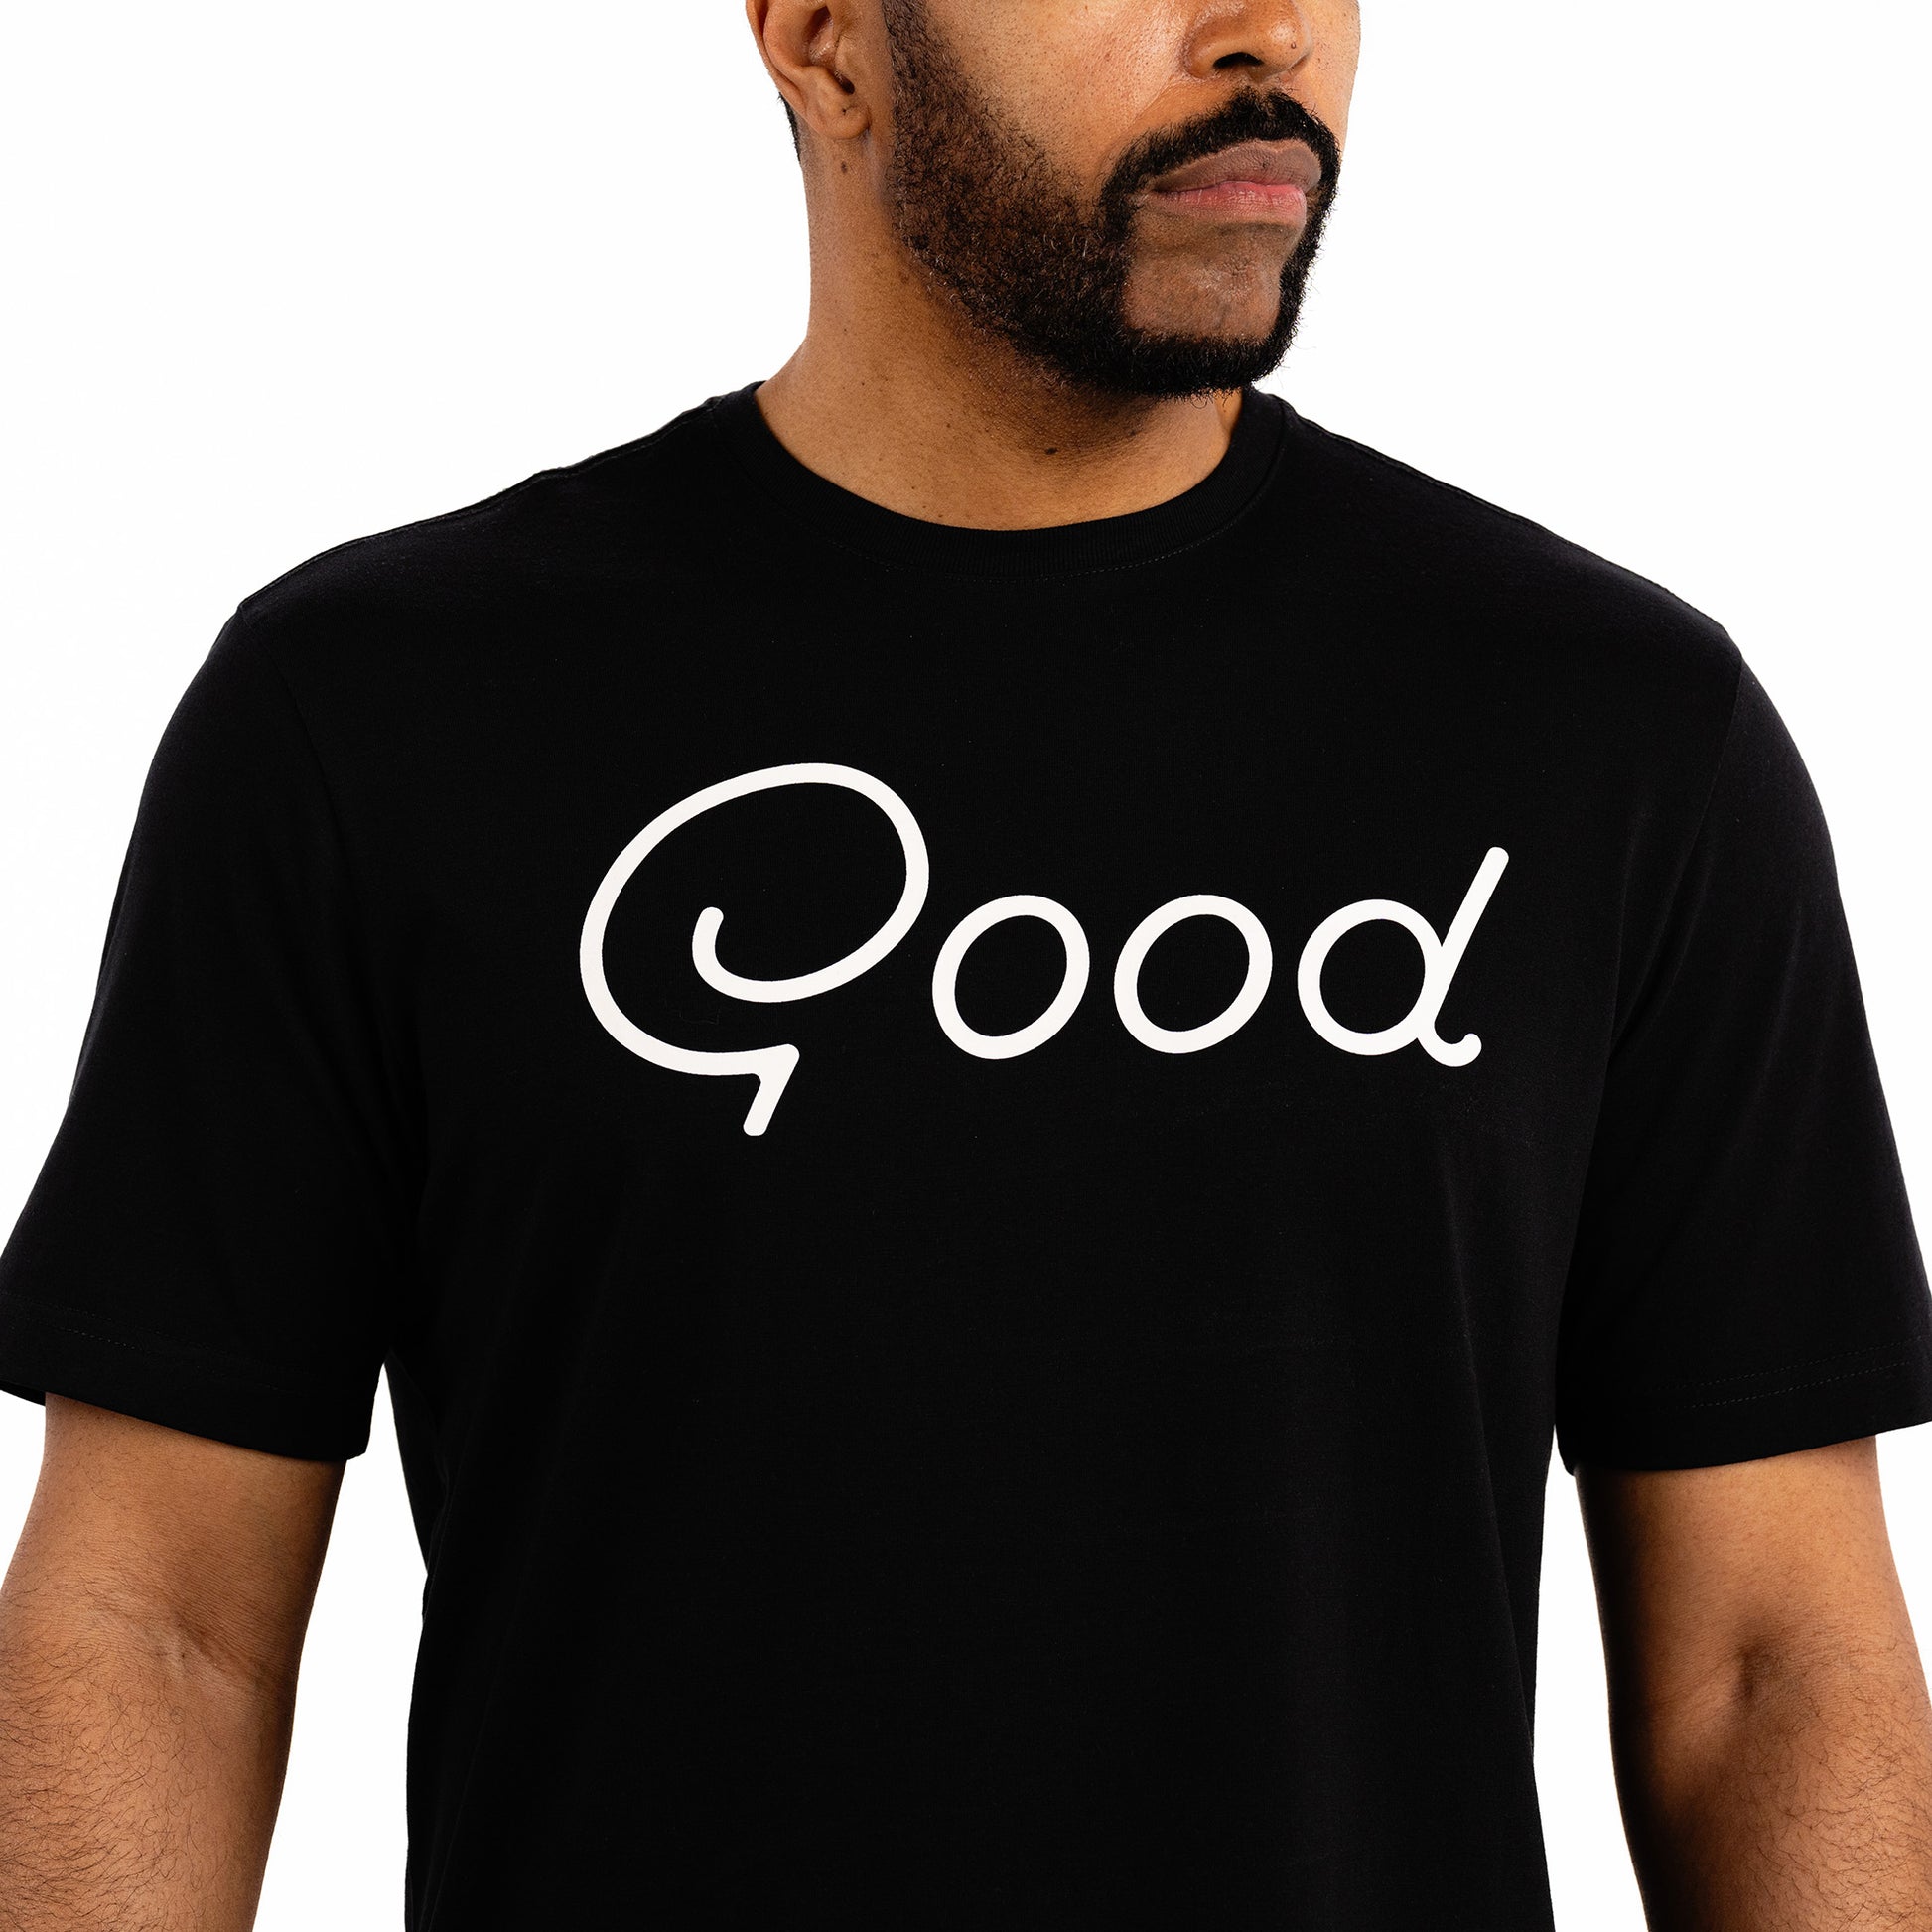 Good Black T-Shirt- Ultra-Soft Men's T-Shirt from Good Good Golf